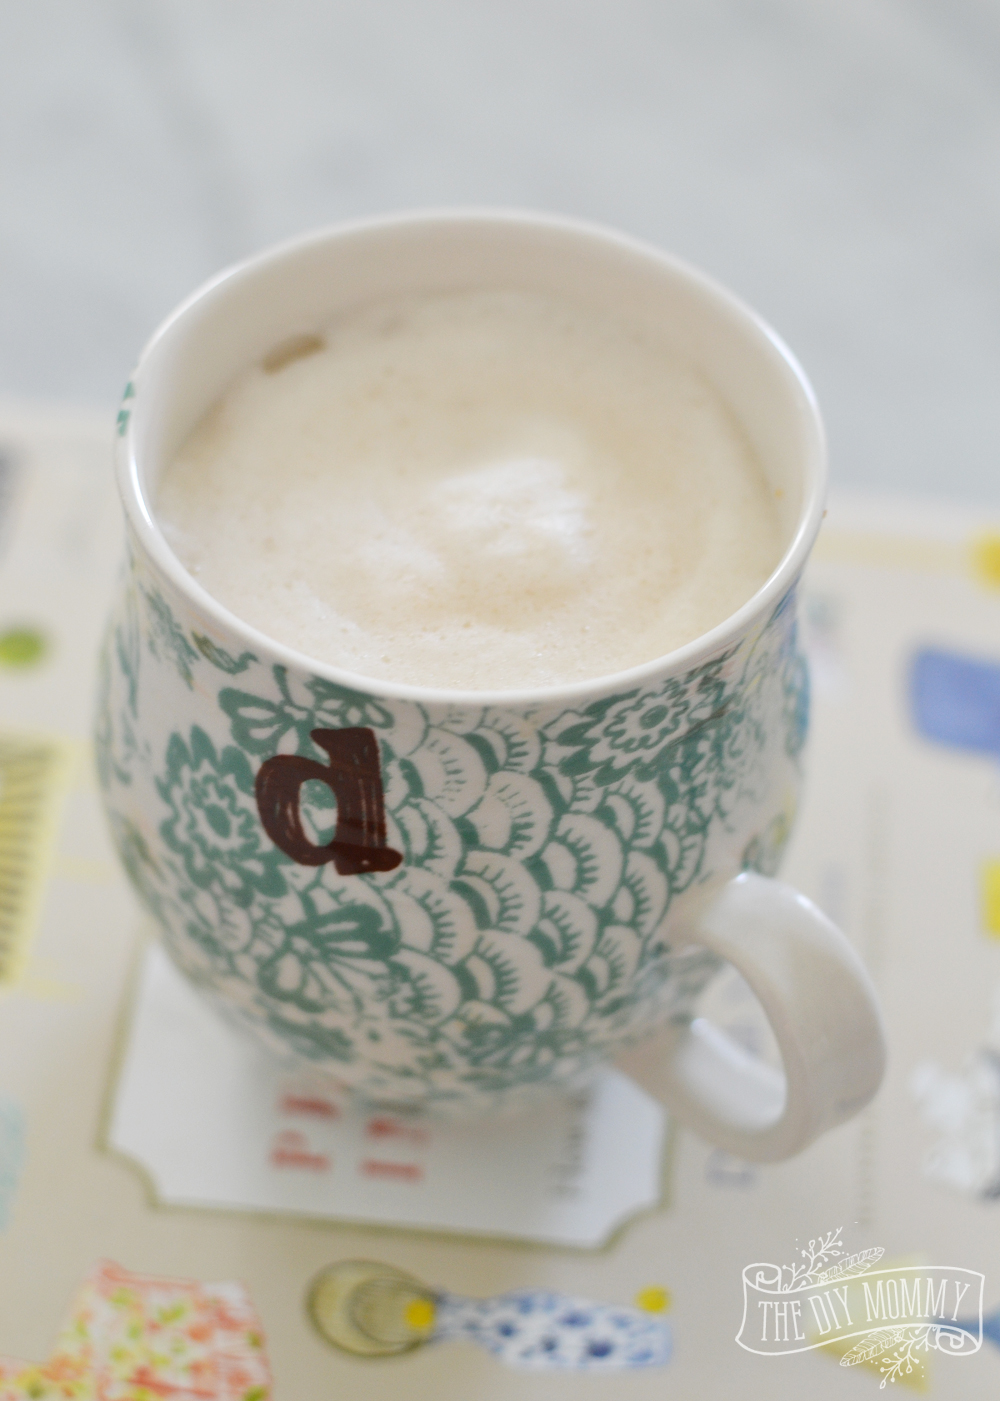 How to make a DIY maple London Fog (an Earl Grey latte) thediymommy.wpsc.dev